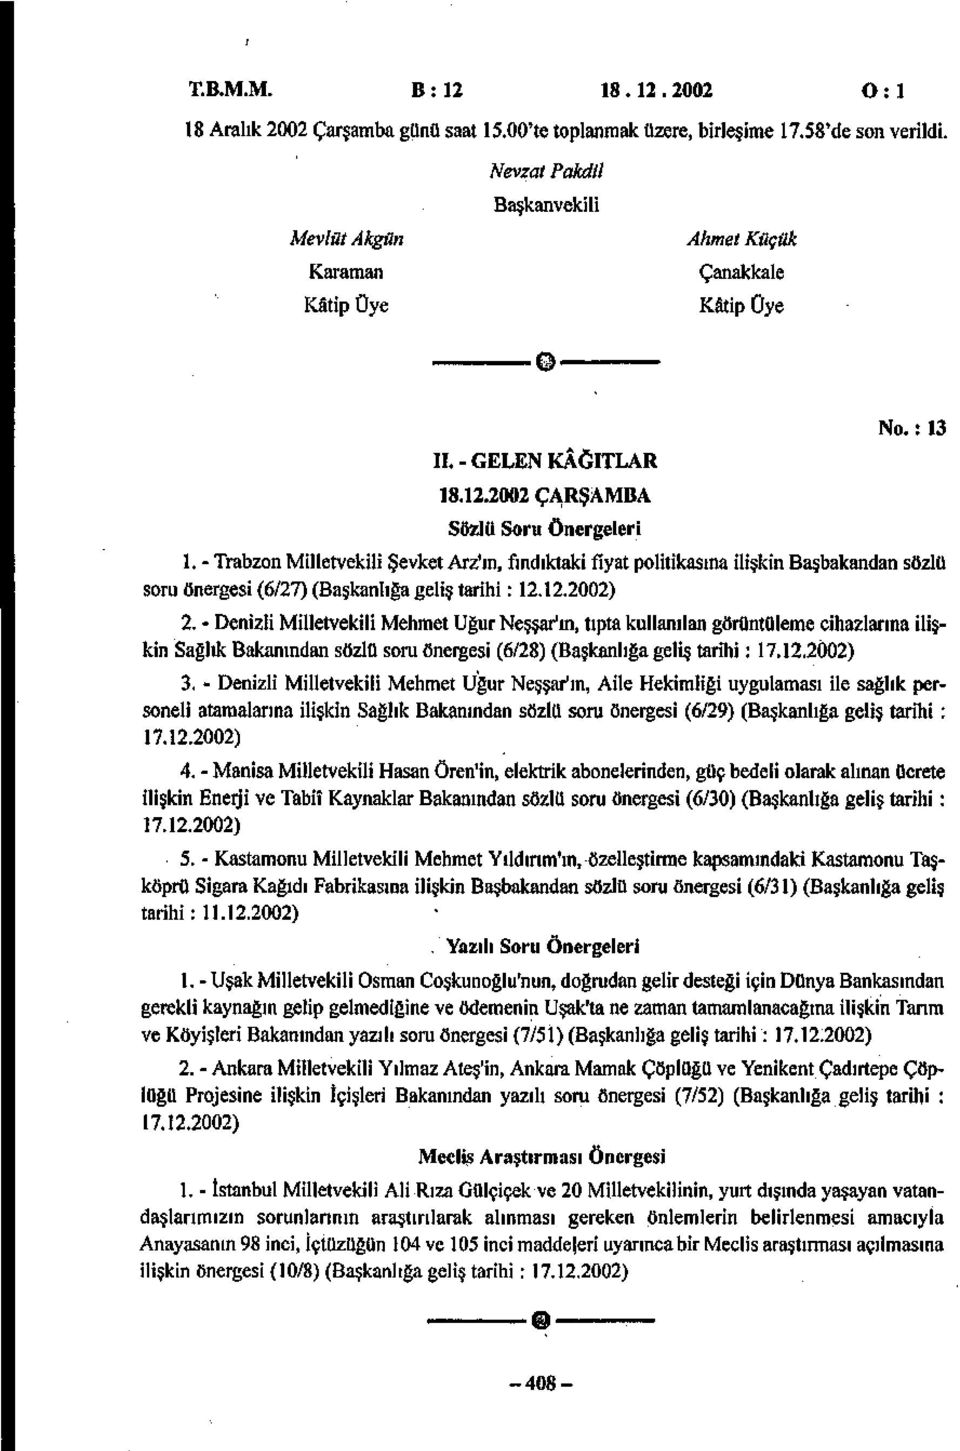 - Trabzon Milletvekili Şevket Arz'ın, fındıktaki fiyat politikasına ilişkin Başbakandan sözlü soru önergesi (6/27) (Başkanlığa geliş tarihi: 12.12.2002) 2.